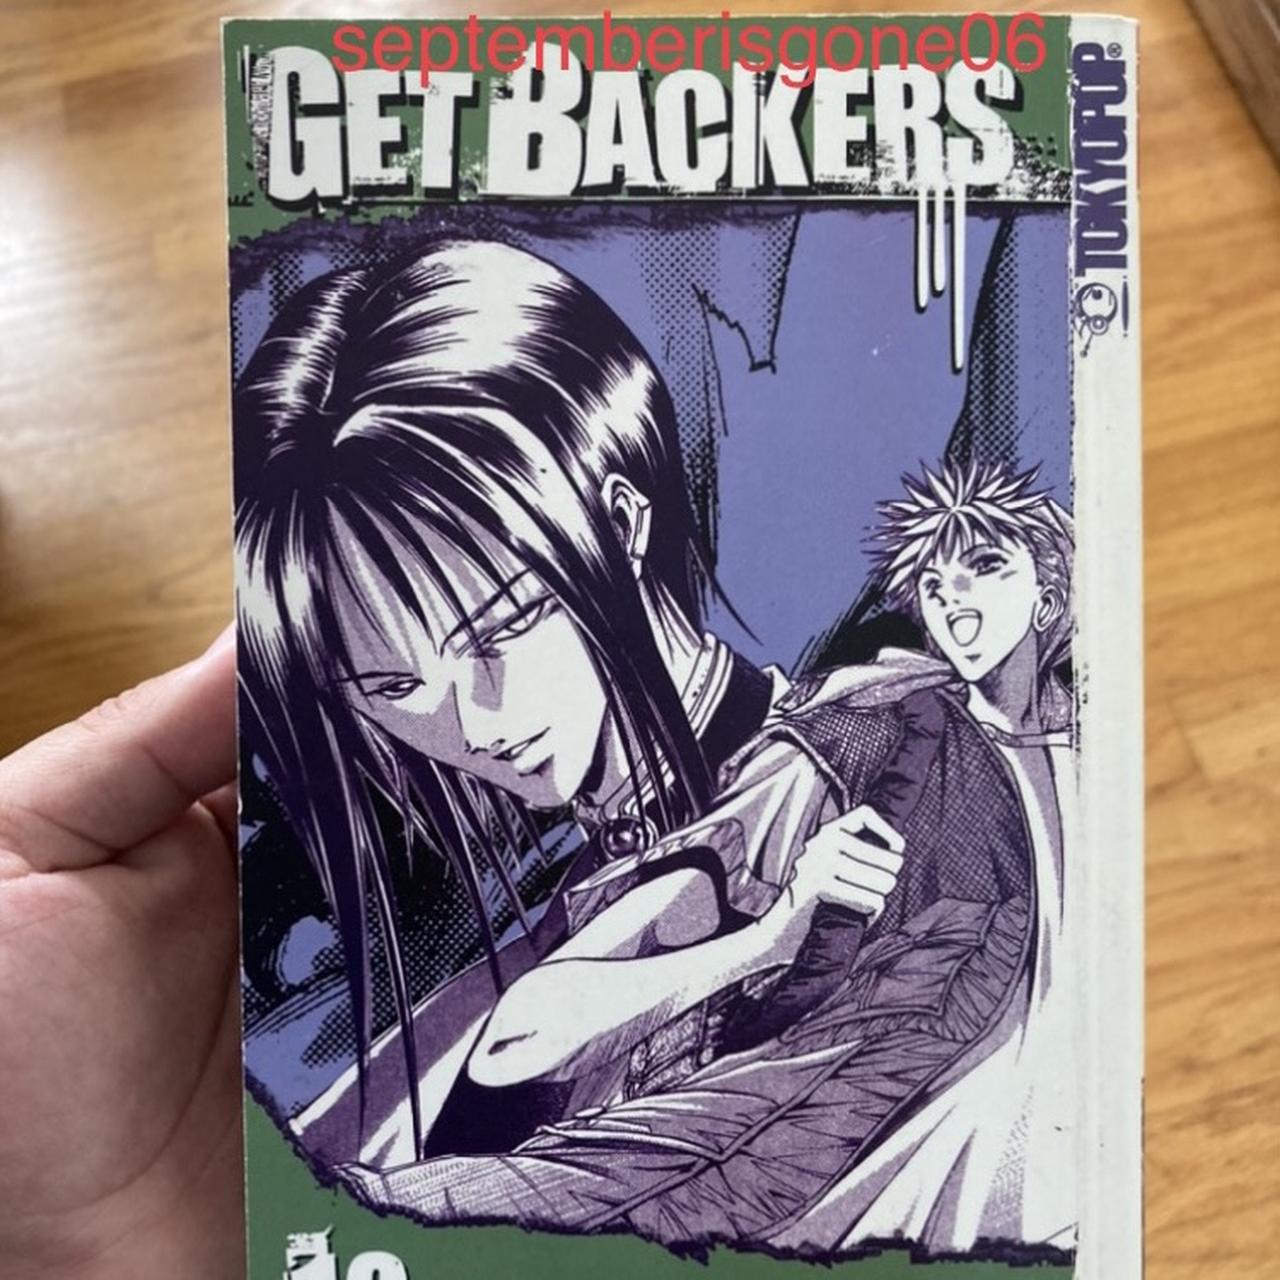 GetBackers, Volume 1 by Yuya Aoki